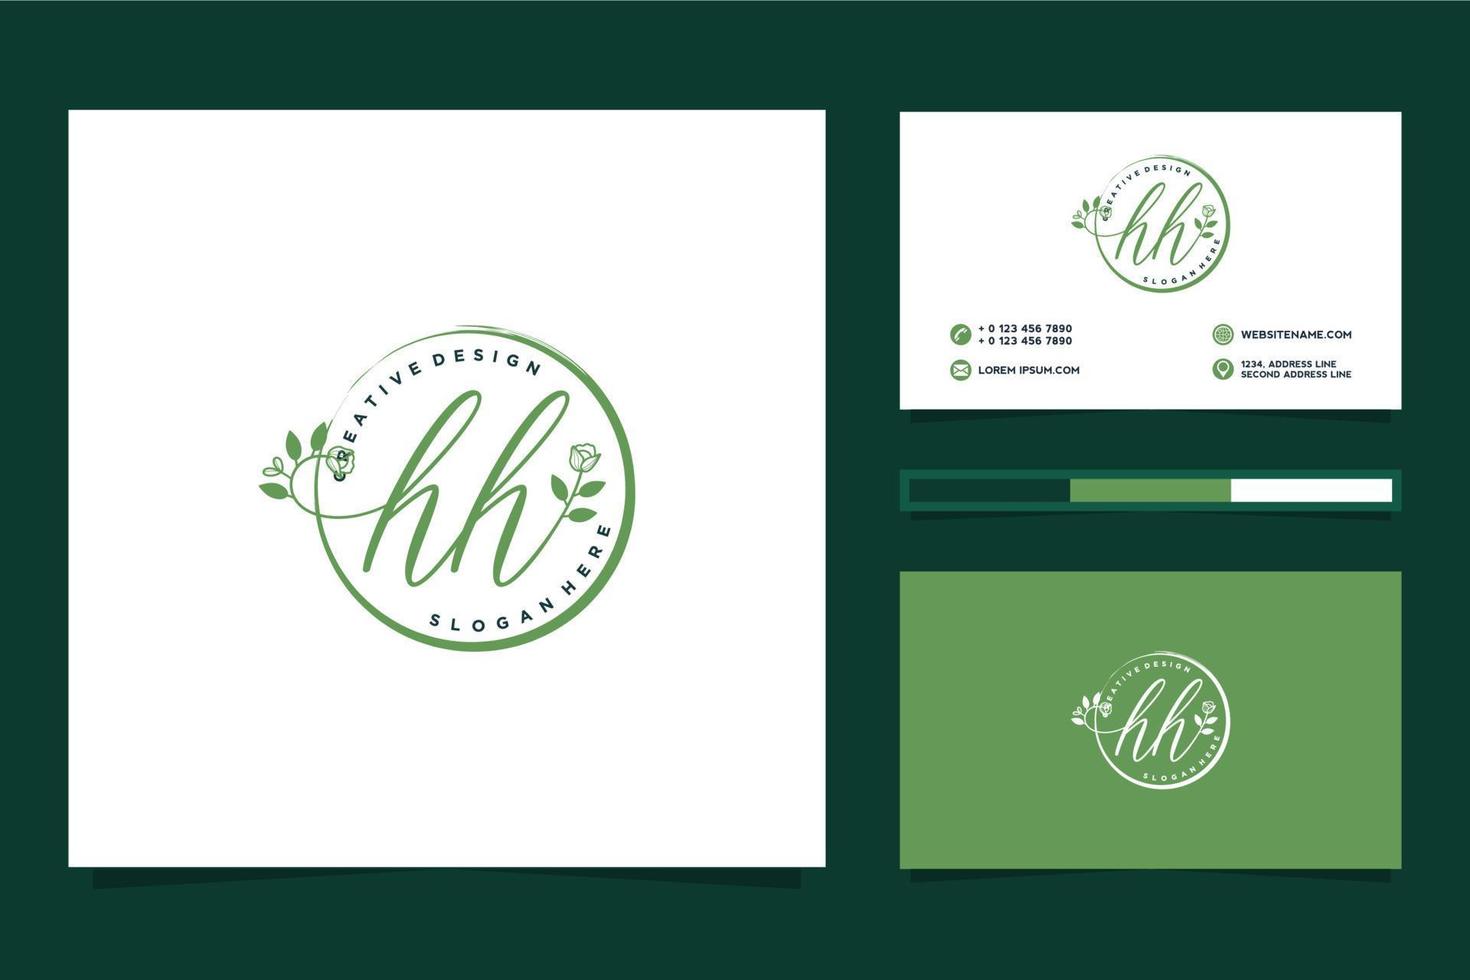 första hh feminin logotyp samlingar och företag kort templat premie vektor